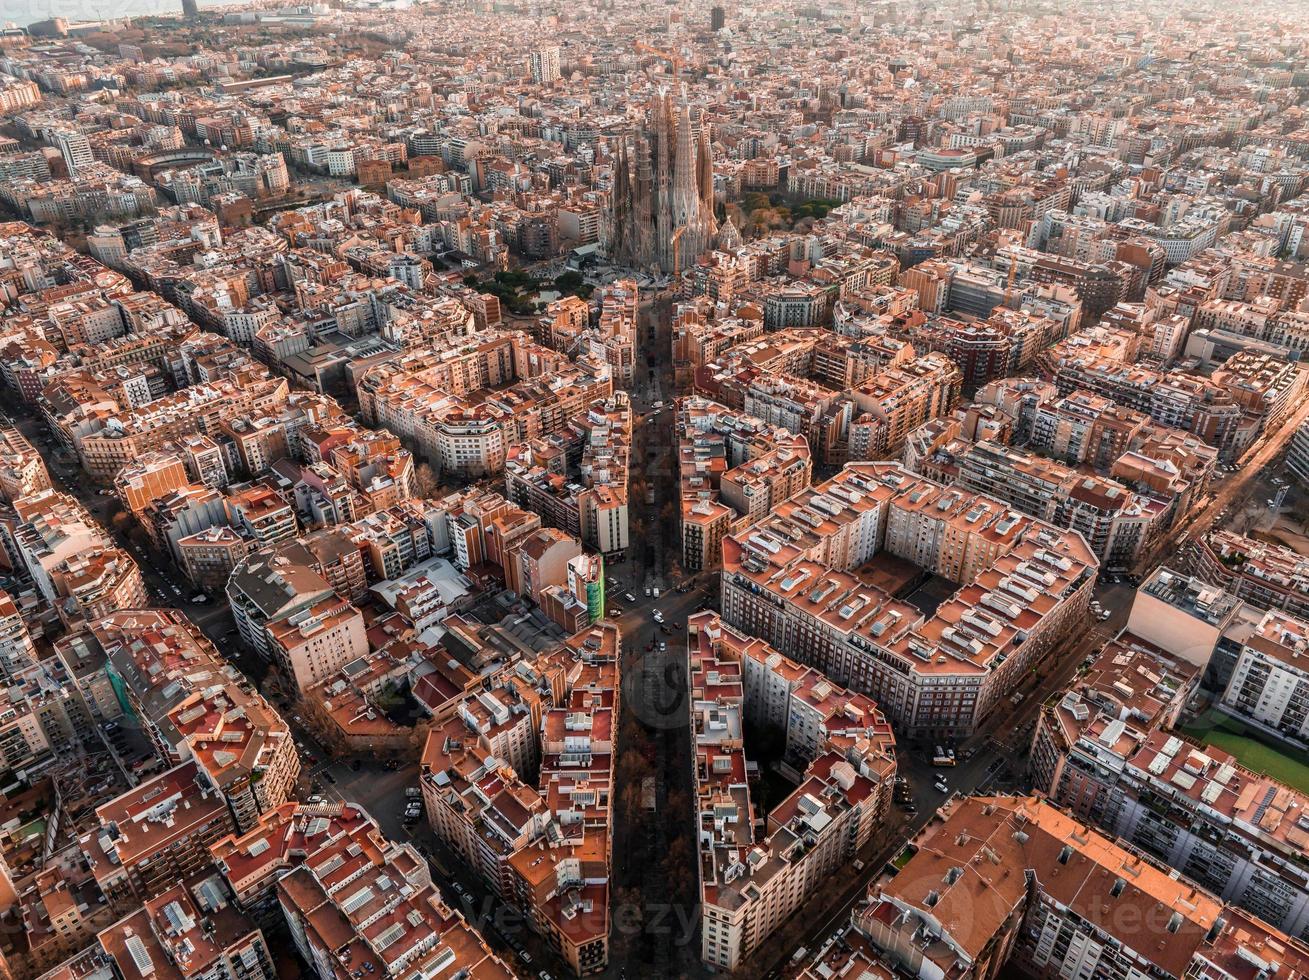 aéreo Visão do Barcelona cidade Horizonte e sagrada familia catedral às pôr do sol. foto